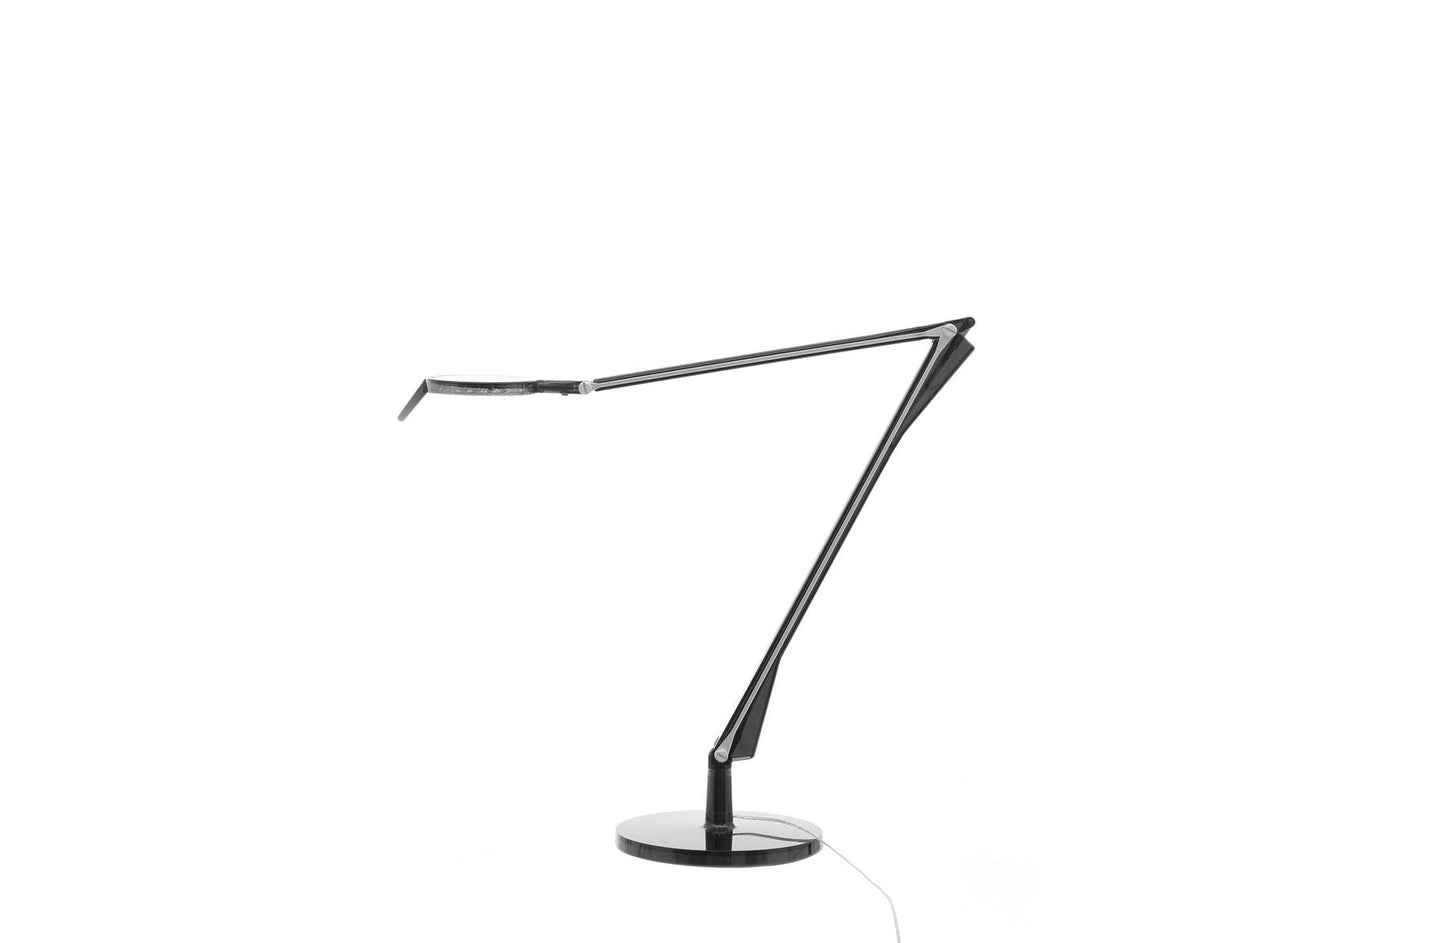 Aledin Tec Desk Lamp
